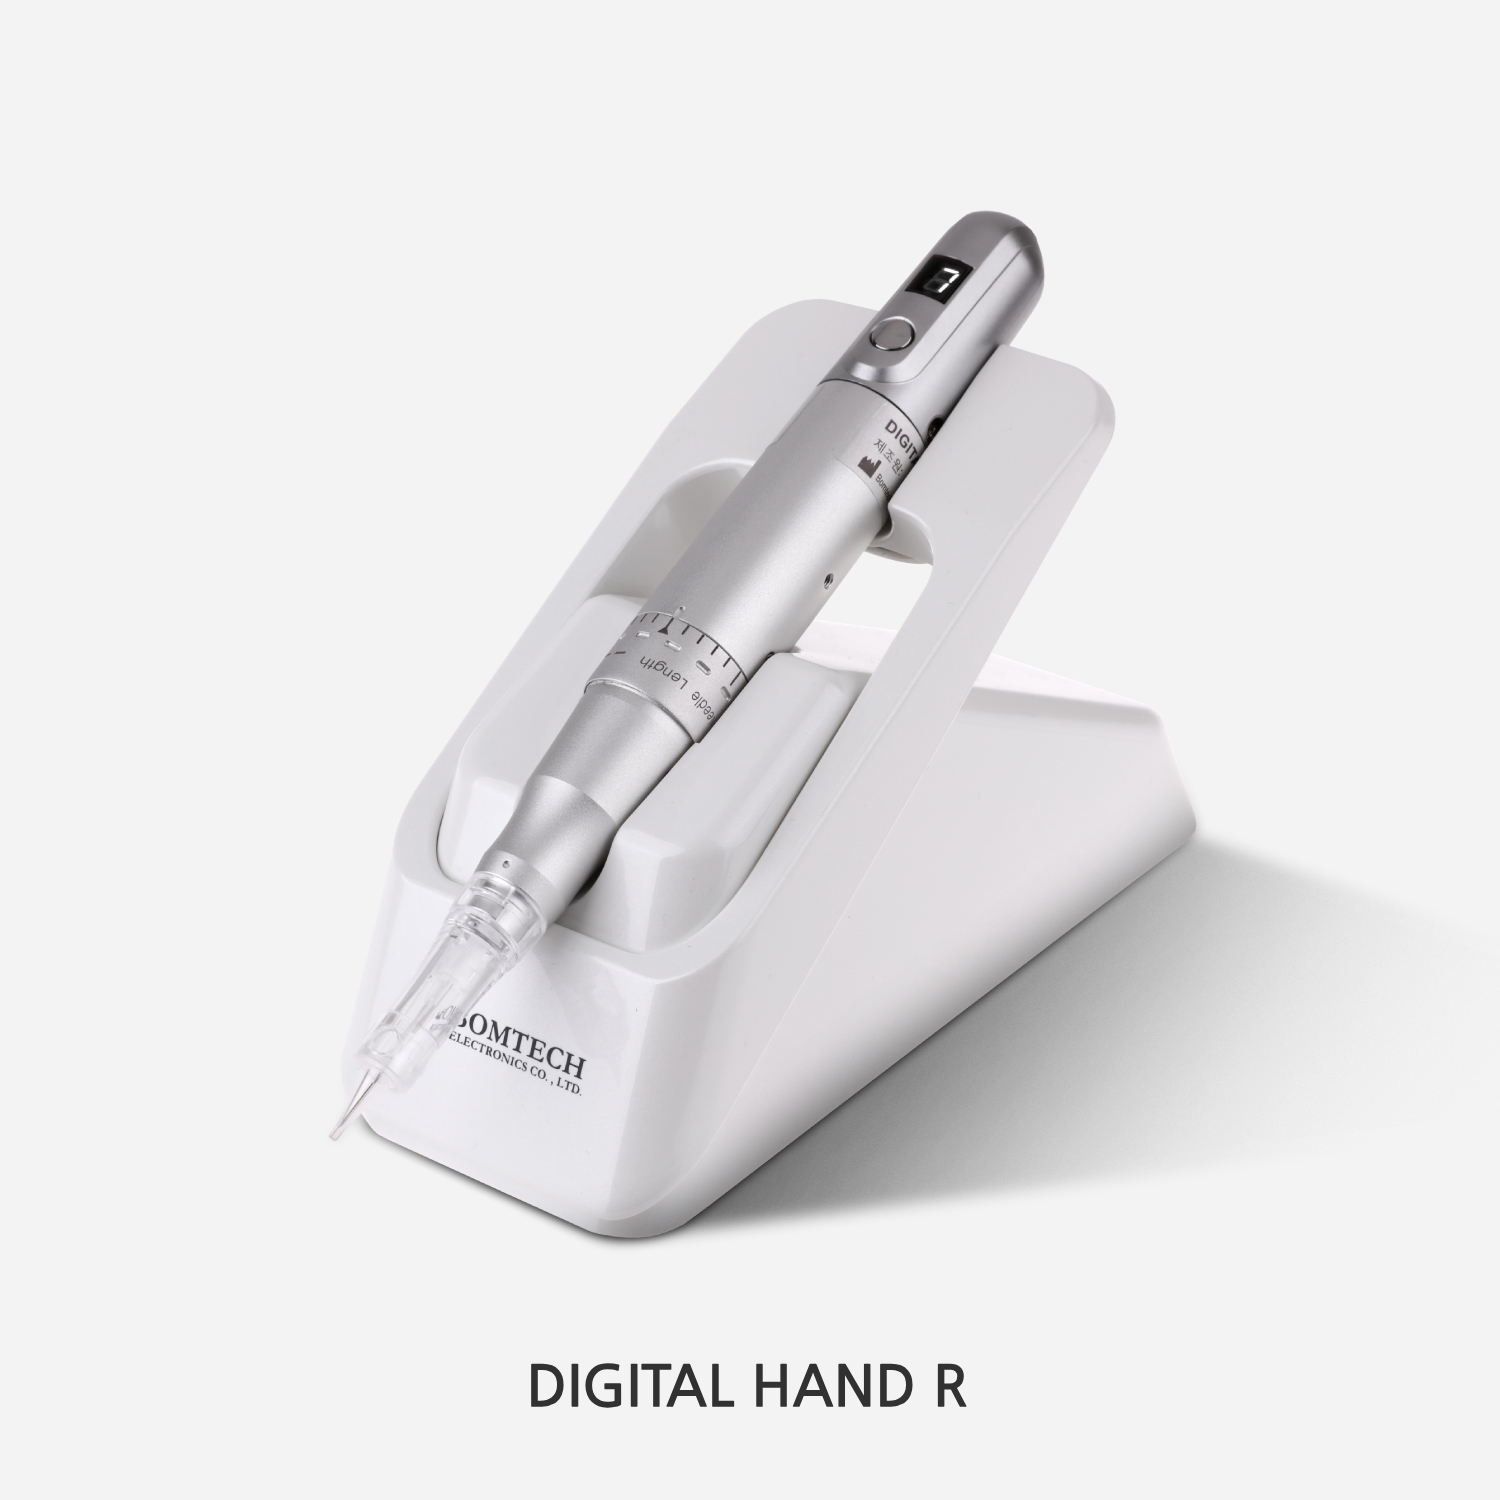 Digital Hand R